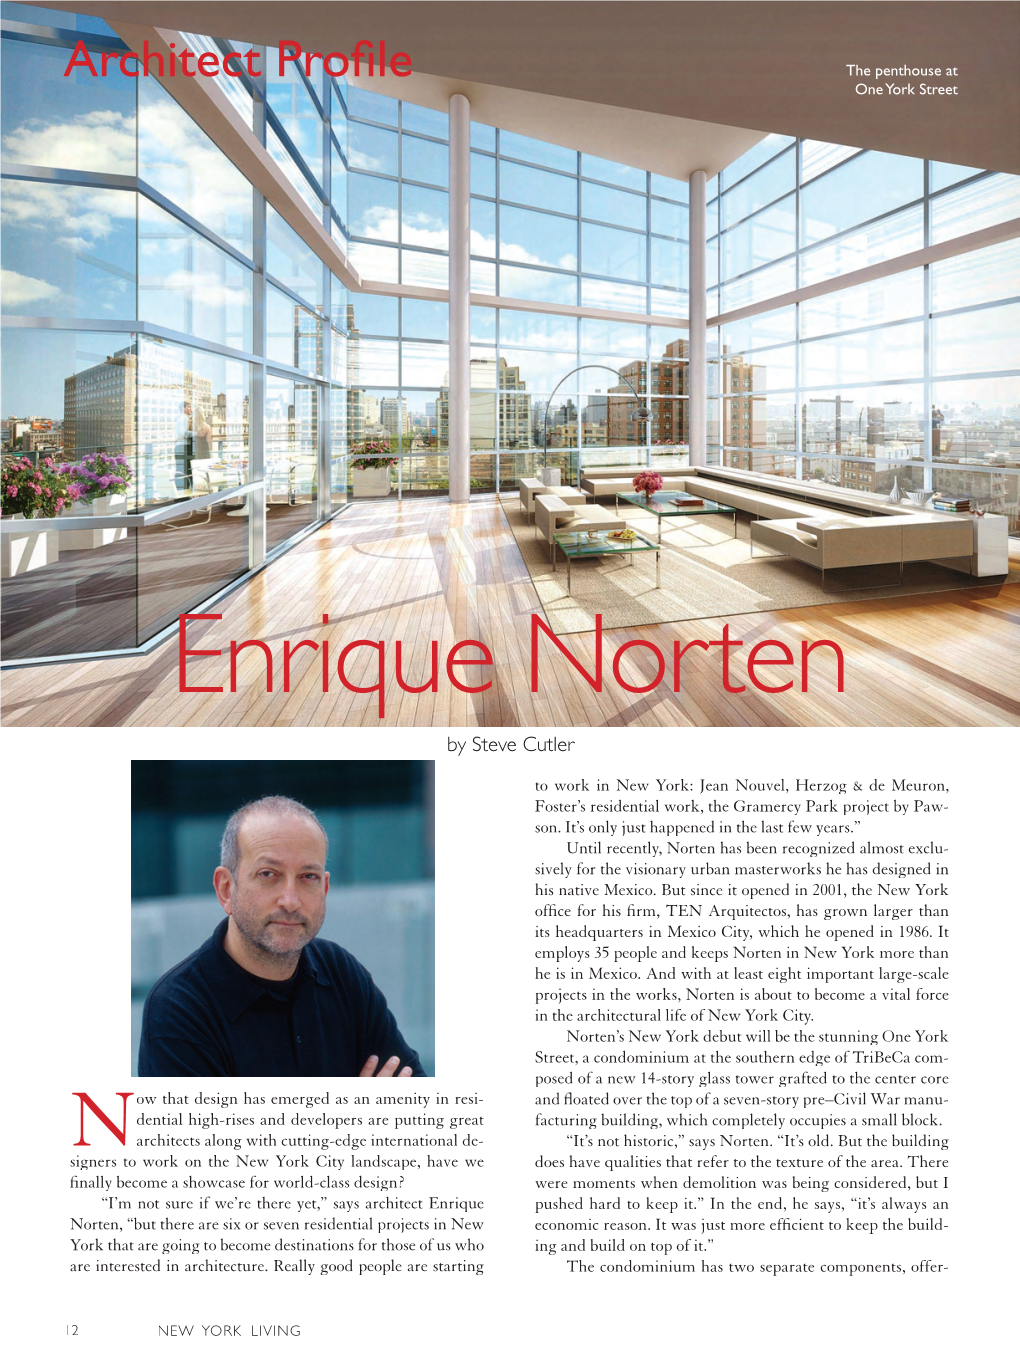 Enrique Norten by Steve Cutler